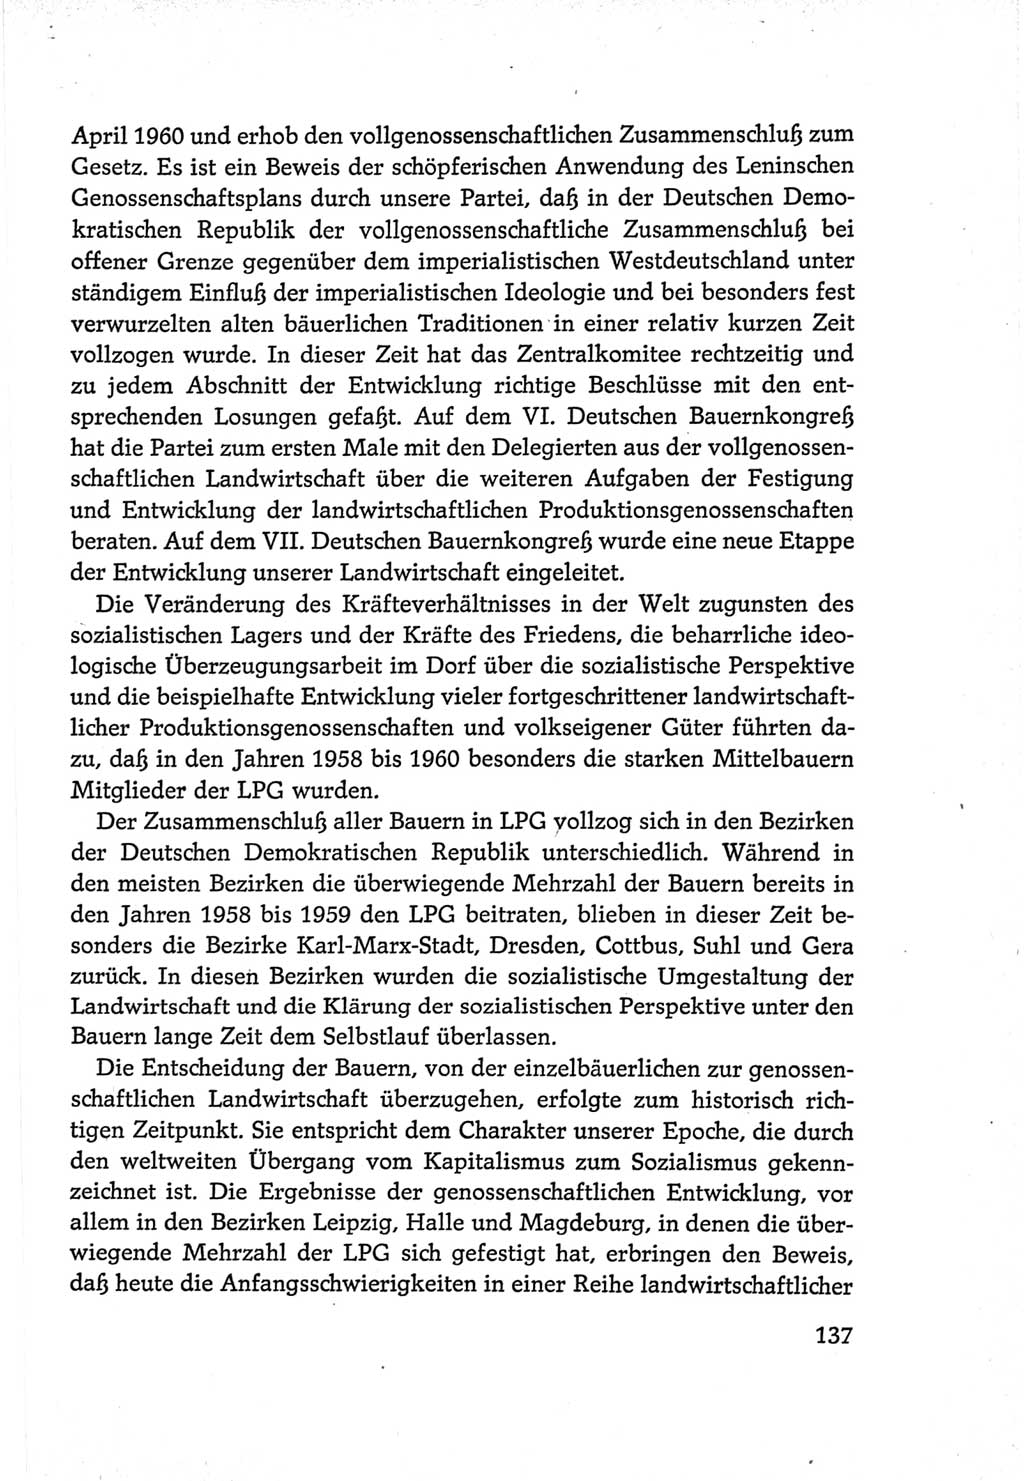 Protokoll der Verhandlungen des Ⅵ. Parteitages der Sozialistischen Einheitspartei Deutschlands (SED) [Deutsche Demokratische Republik (DDR)] 1963, Band Ⅳ, Seite 137 (Prot. Verh. Ⅵ. PT SED DDR 1963, Bd. Ⅳ, S. 137)